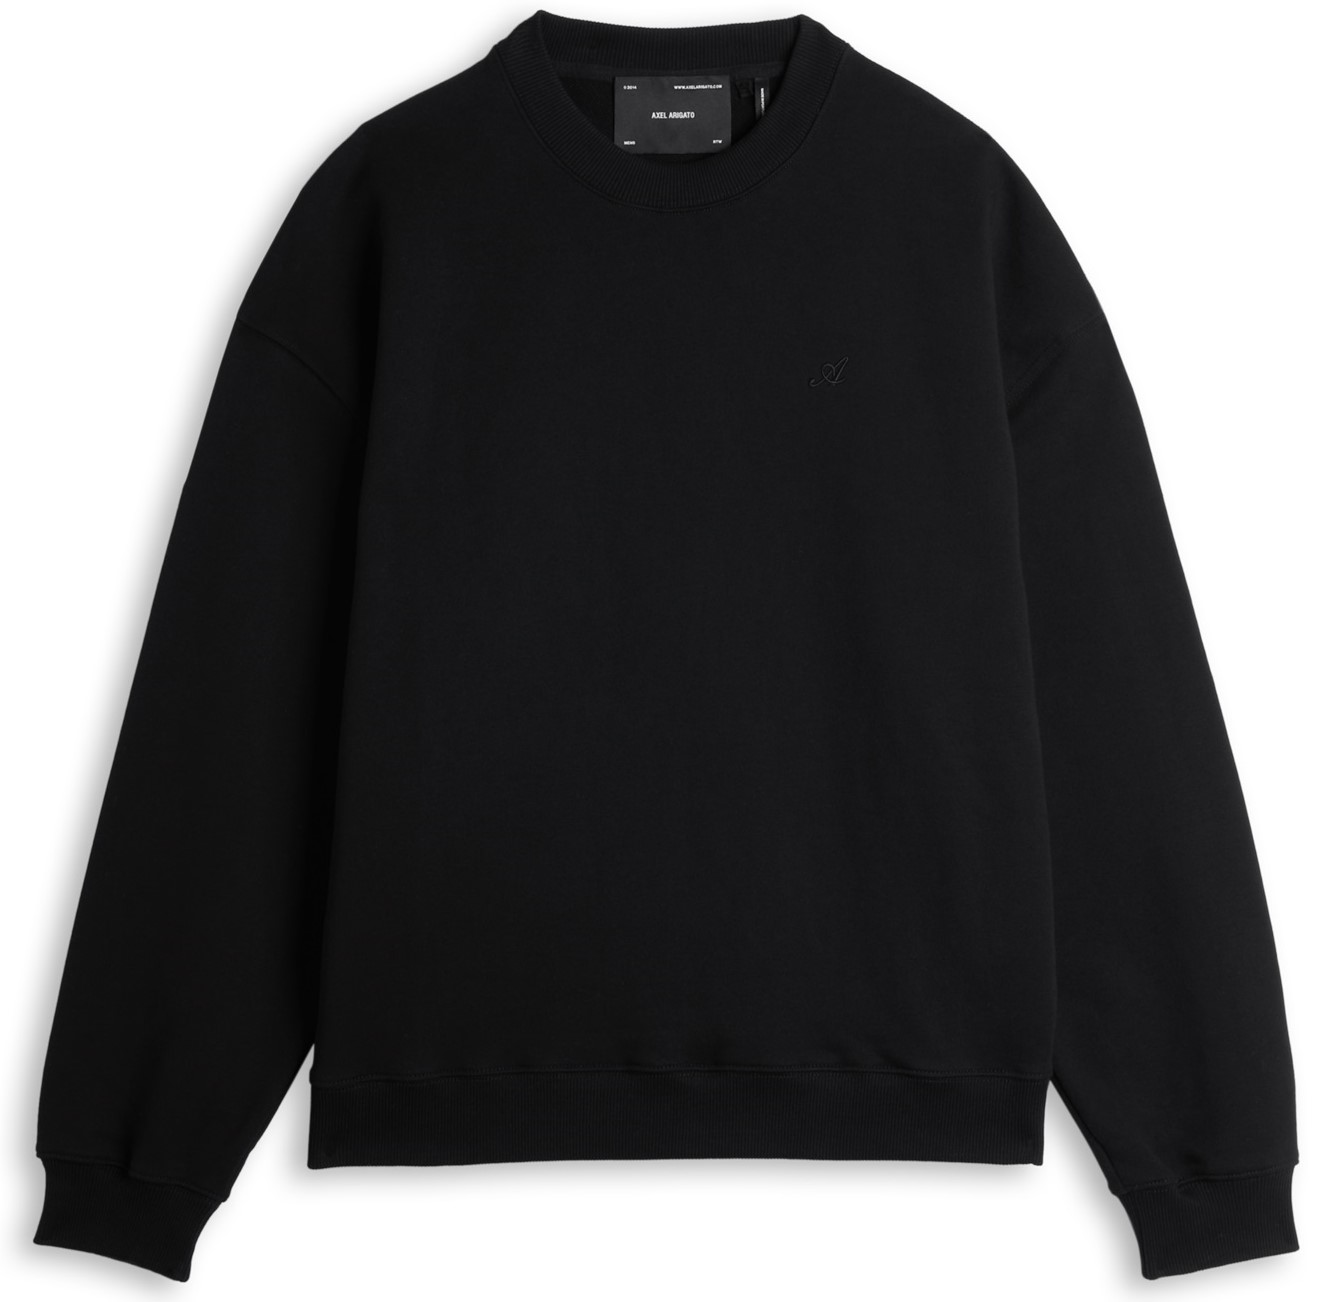 AXEL ARIGATO Signature Sweatshirt in Black S